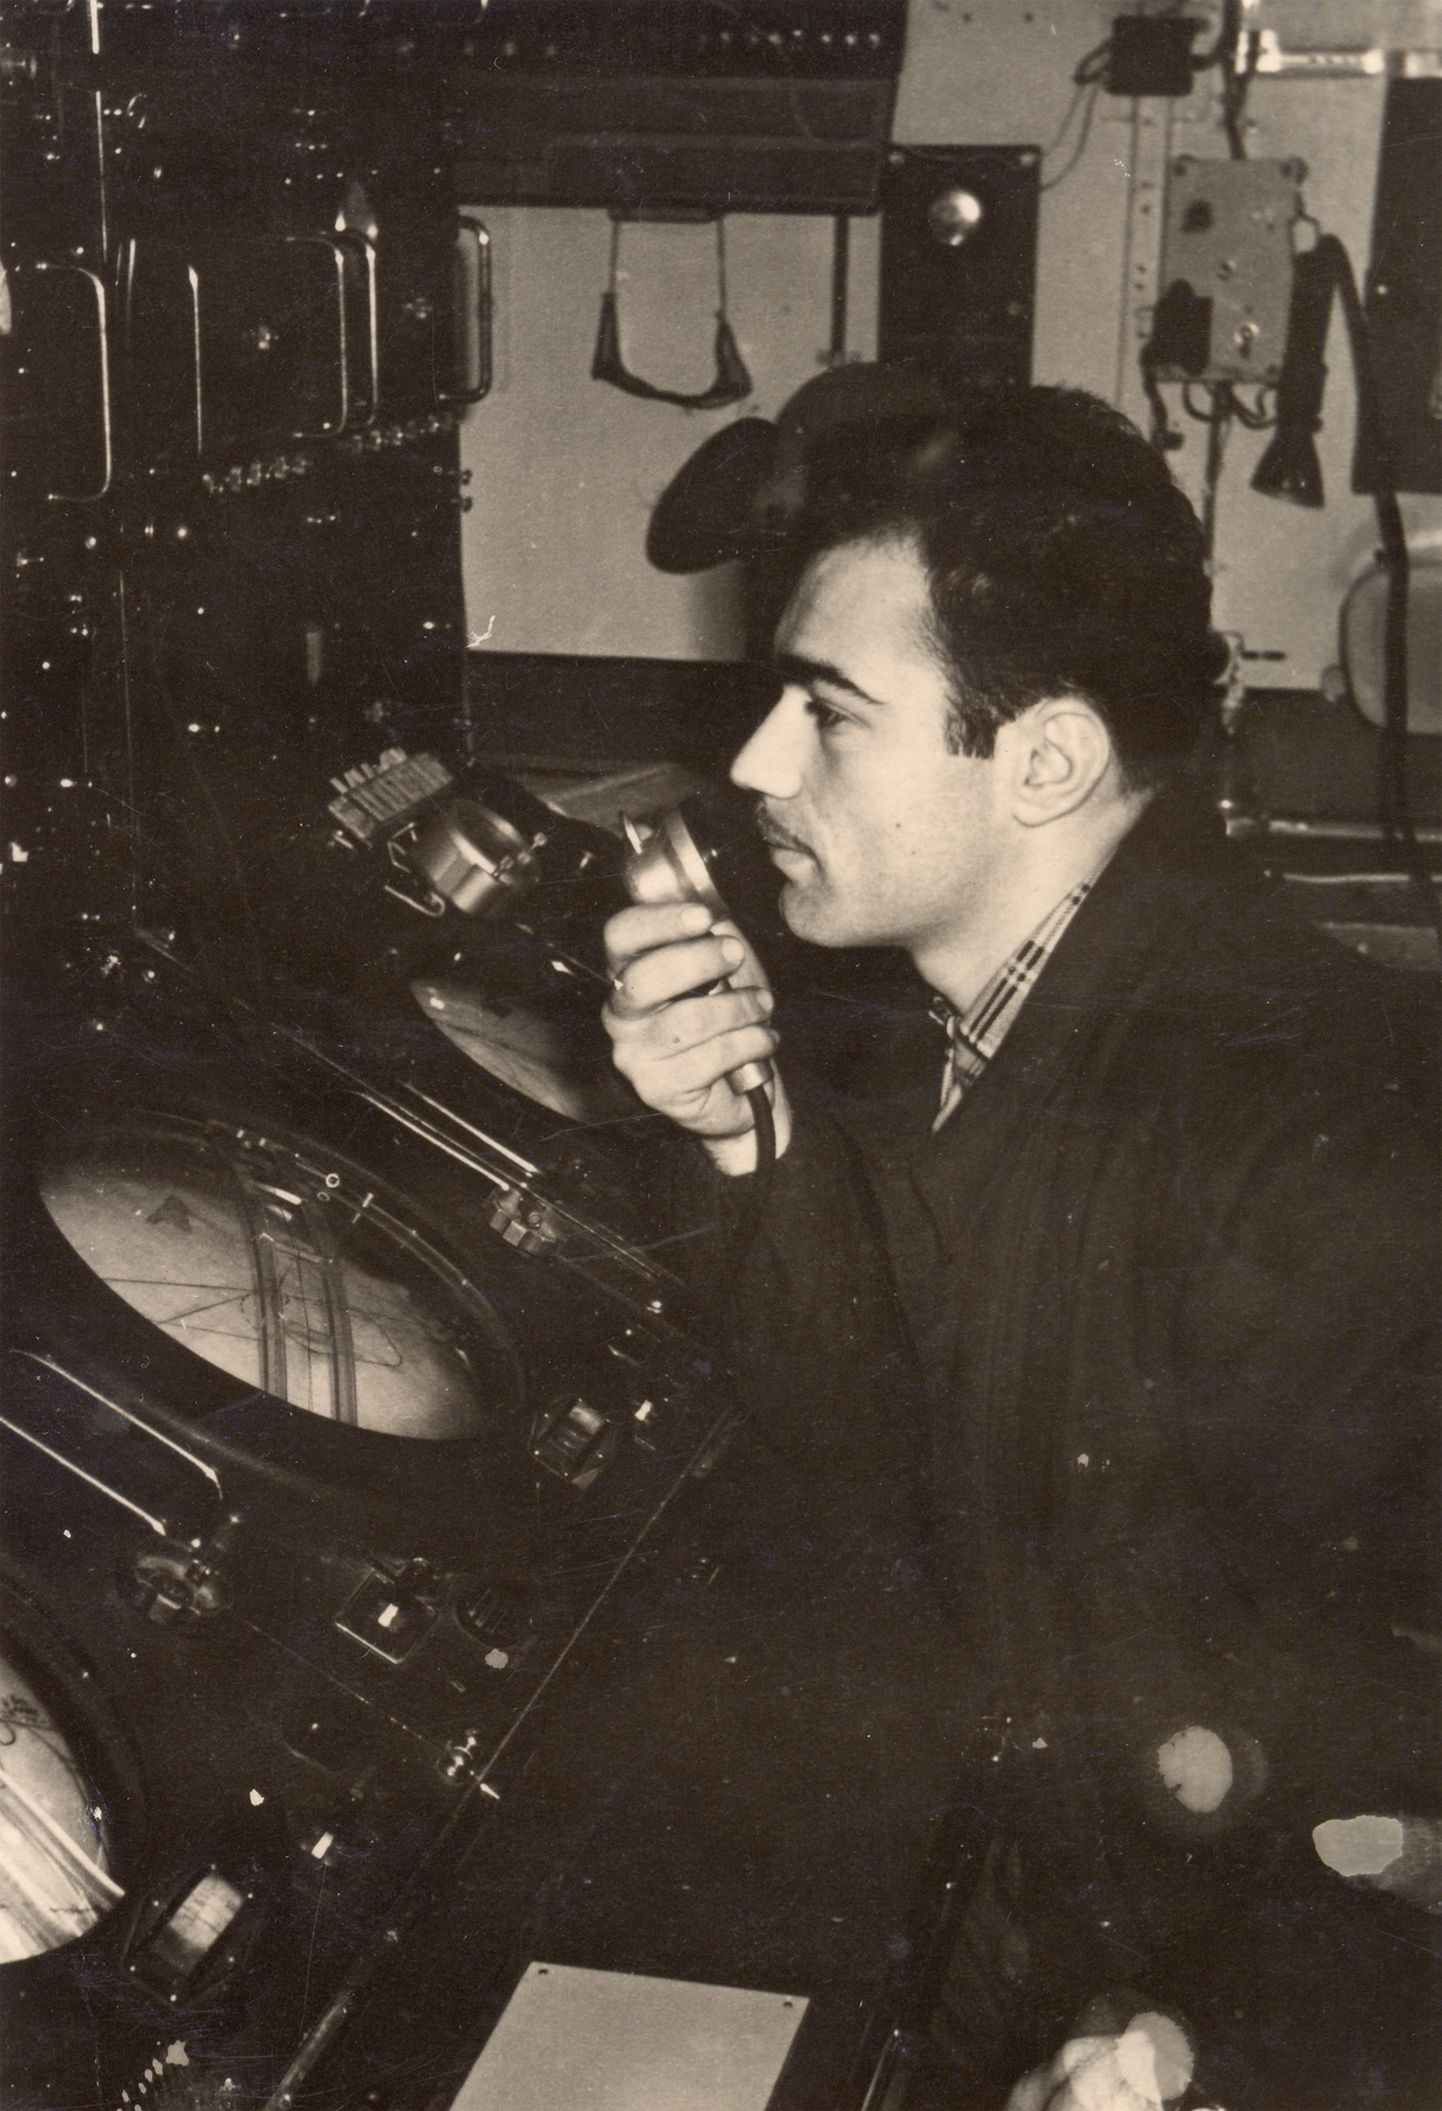 СССР - 1965: на старинном фото молодой оператор радиостанции. Иллюстративное фото к статье.